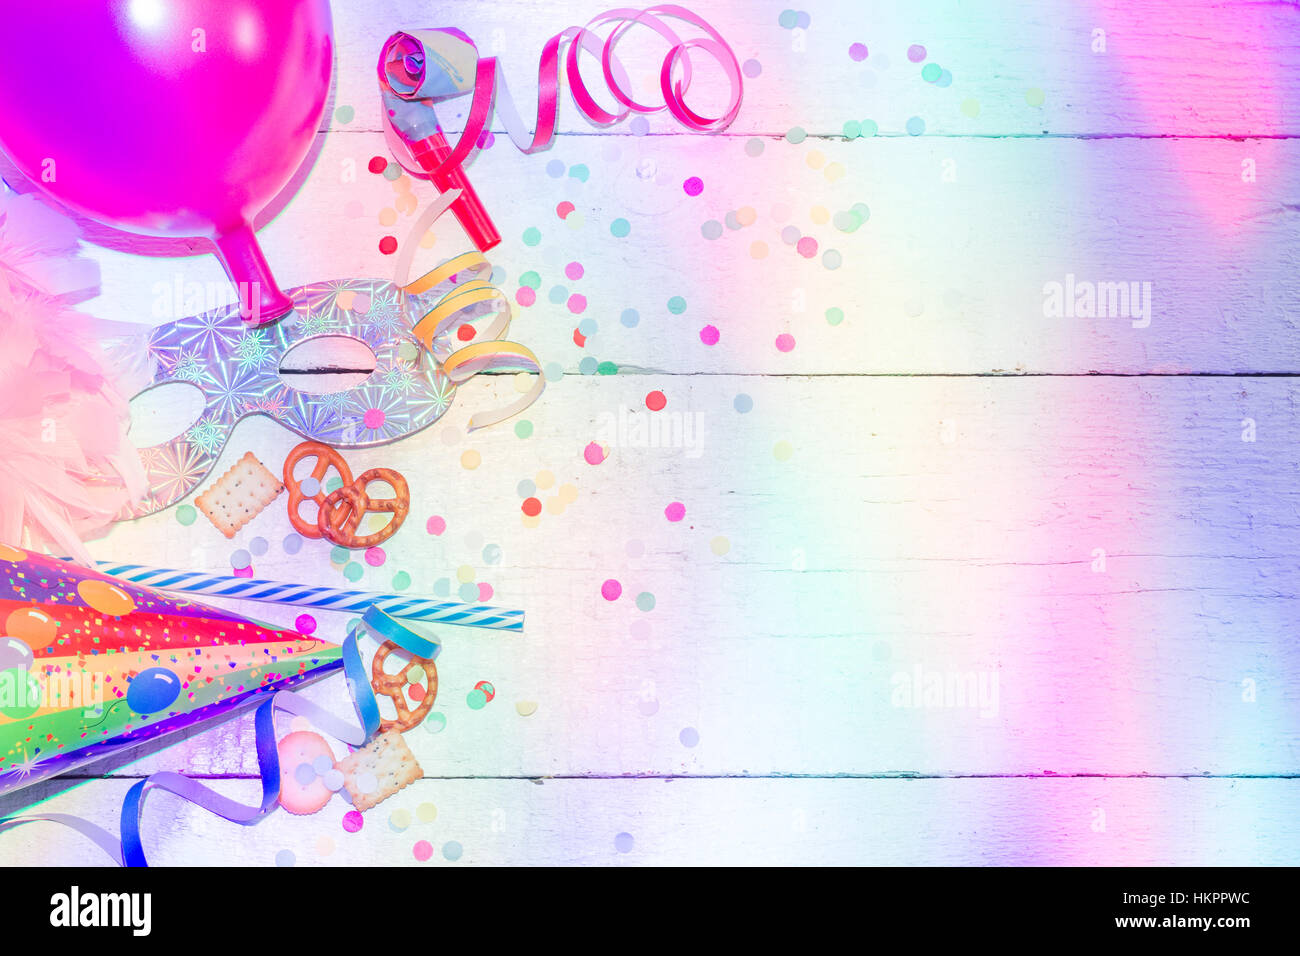 Immagini Stock - Compleanno Colorato O Sfondo Di Carnevale Con Articoli Per  Feste. Concetto Di Festività. Image 93242307